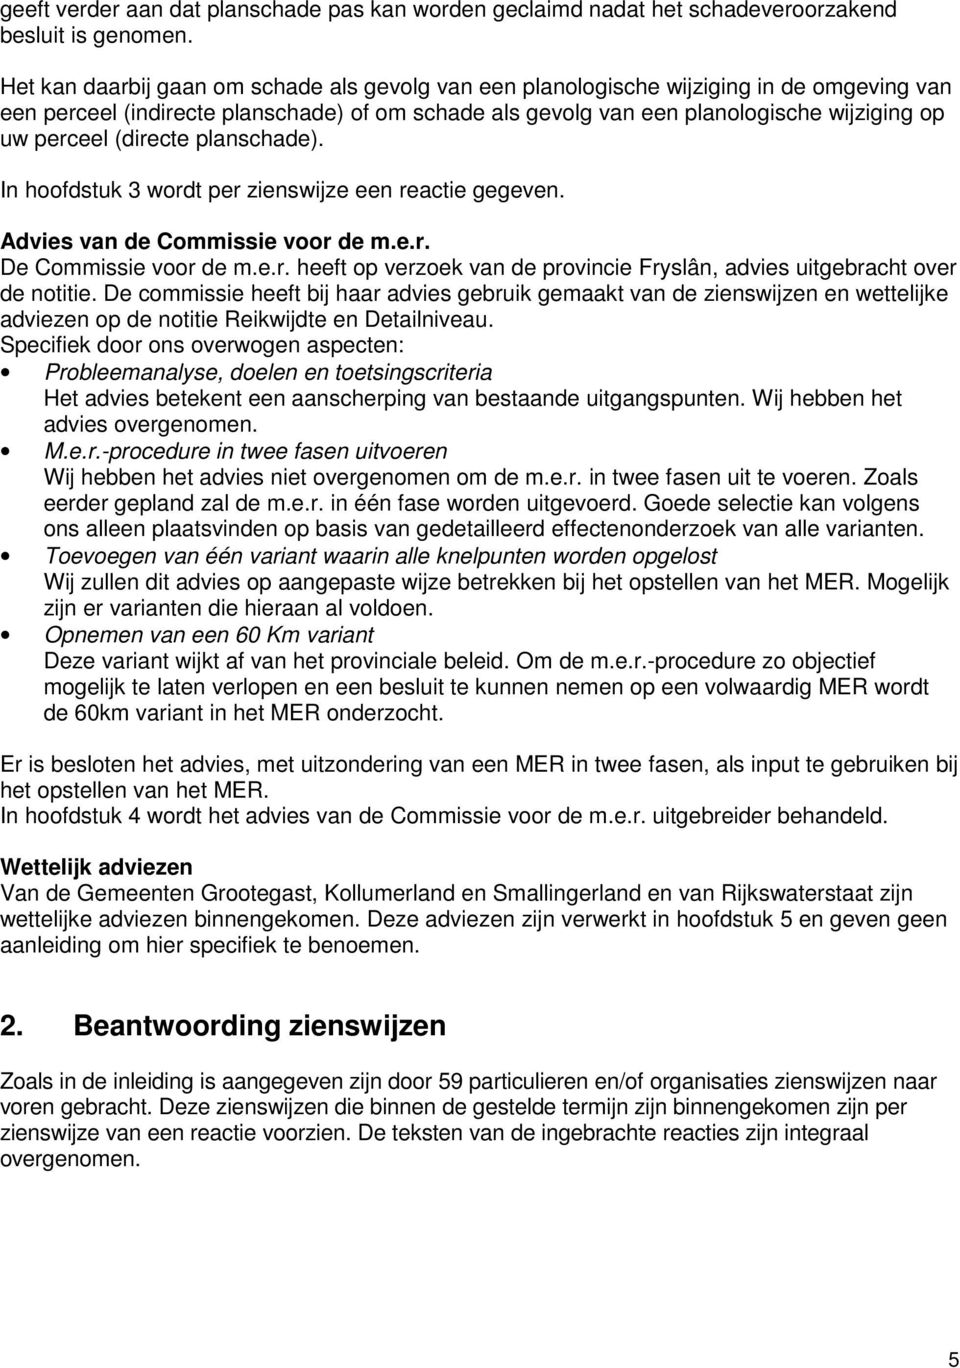 (directe planschade). In hoofdstuk 3 wordt per zienswijze een reactie gegeven. Advies van de Commissie voor de m.e.r. De Commissie voor de m.e.r. heeft op verzoek van de provincie Fryslân, advies uitgebracht over de notitie.